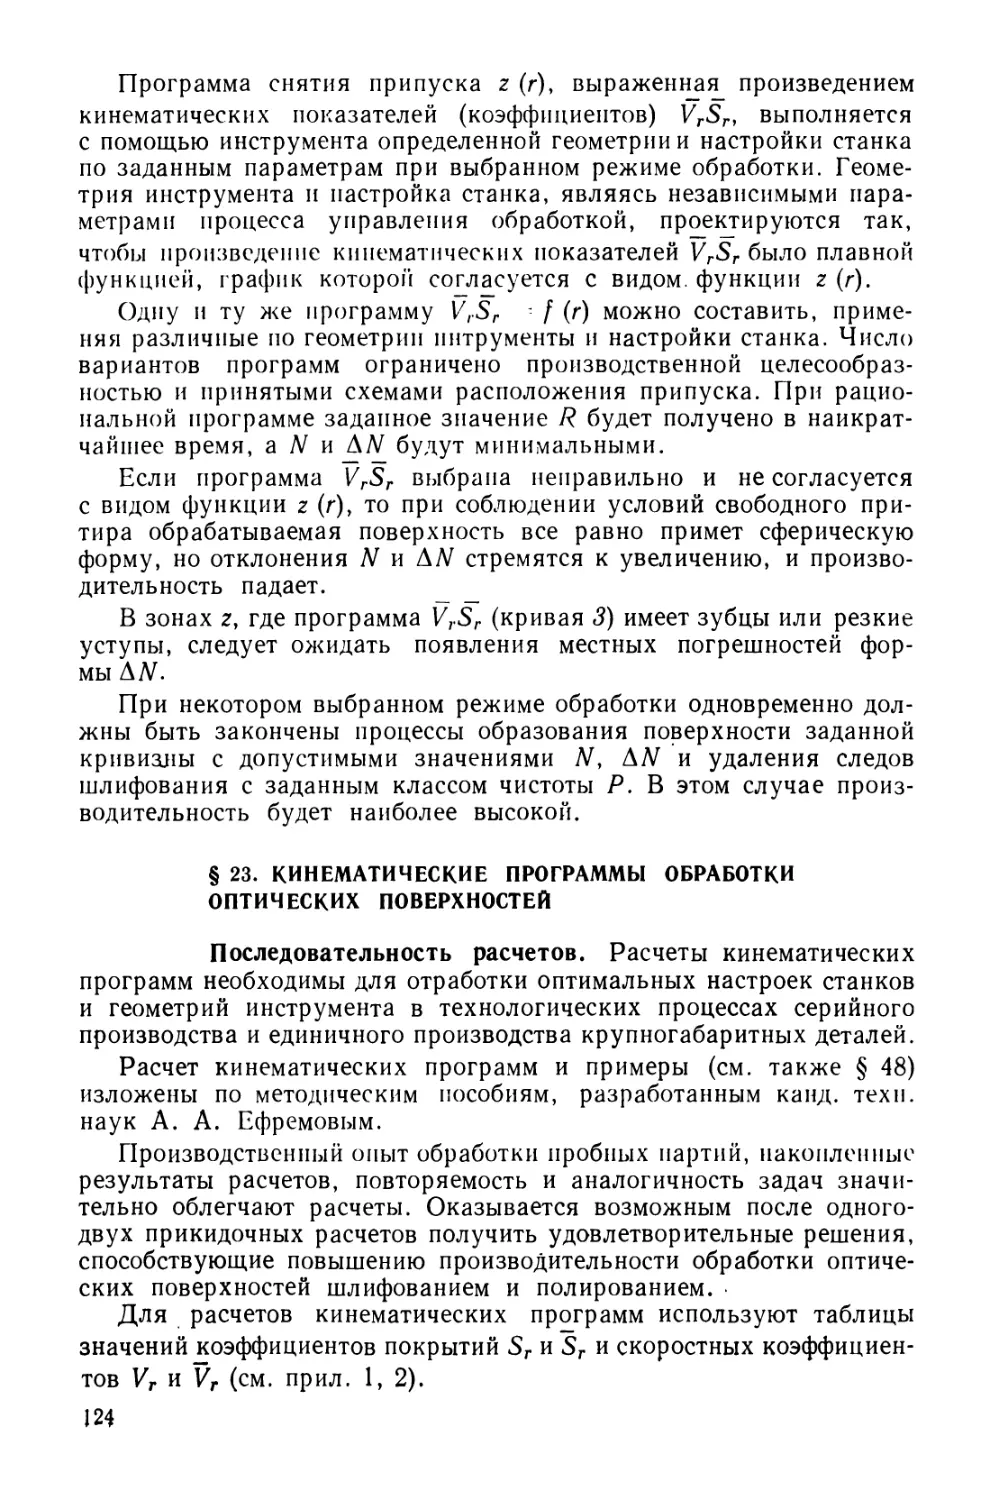 § 23. Кинематические программы обработки оптических поверхностей